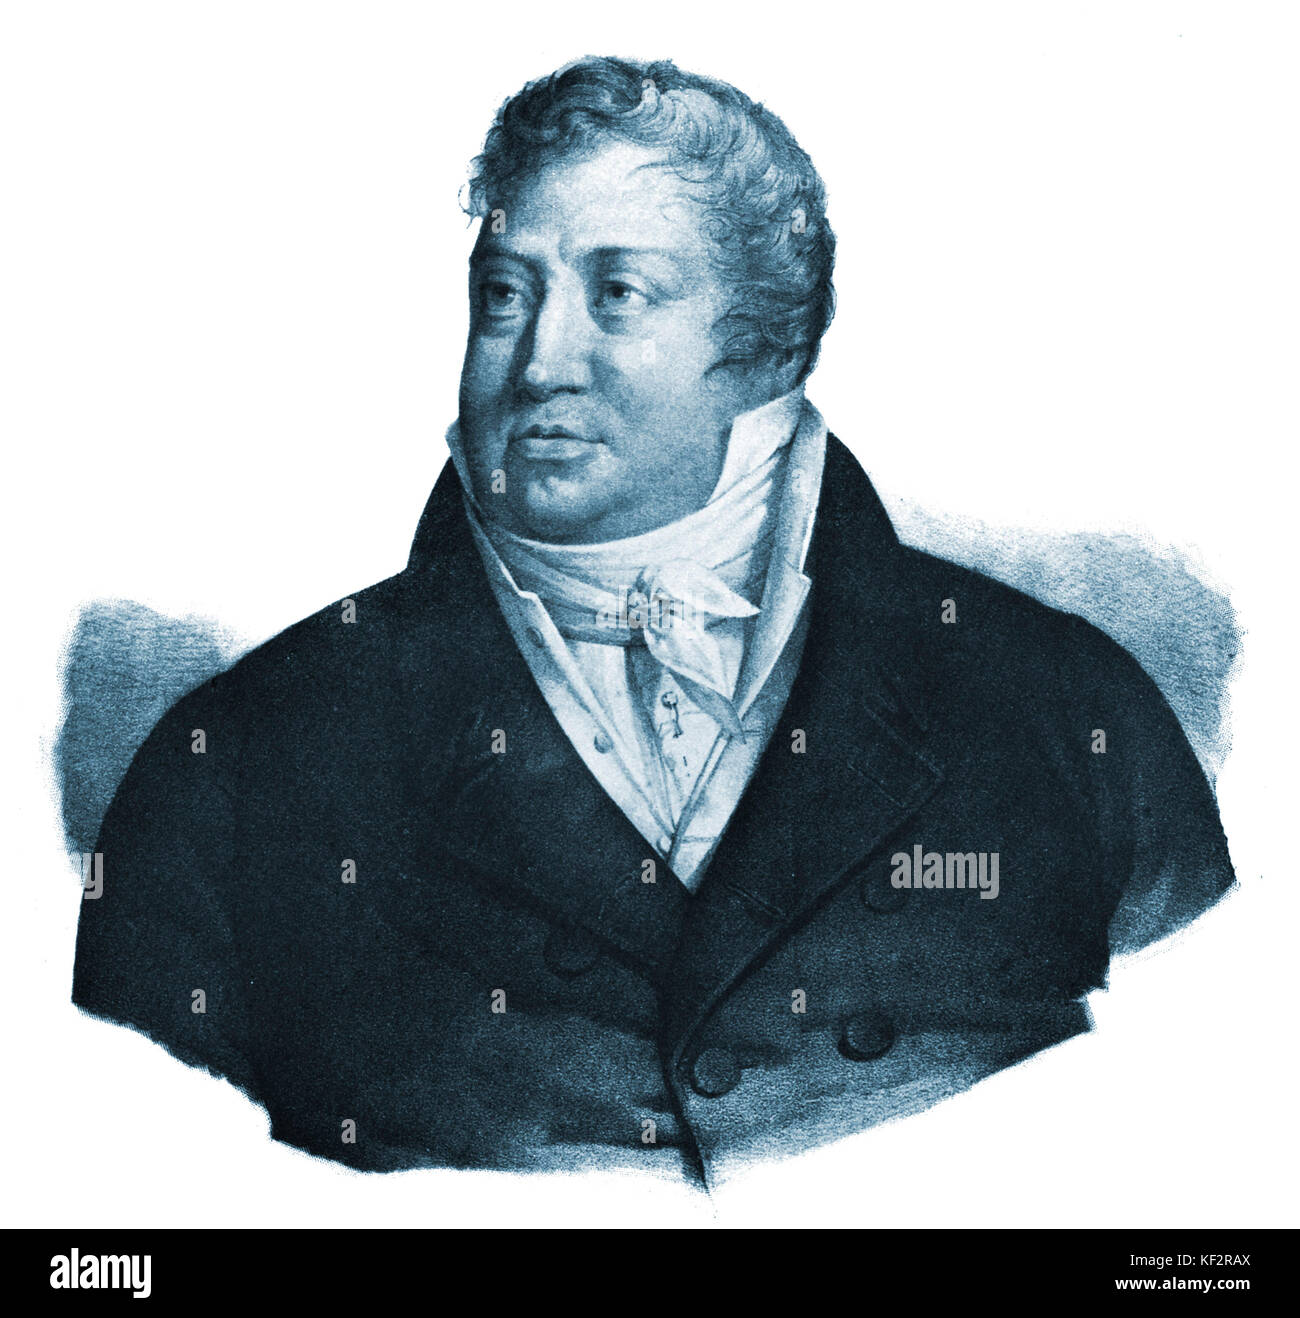 DUSSEK, Jan Ladislav. Bohemian composer, 1760-1812 Stock Photo